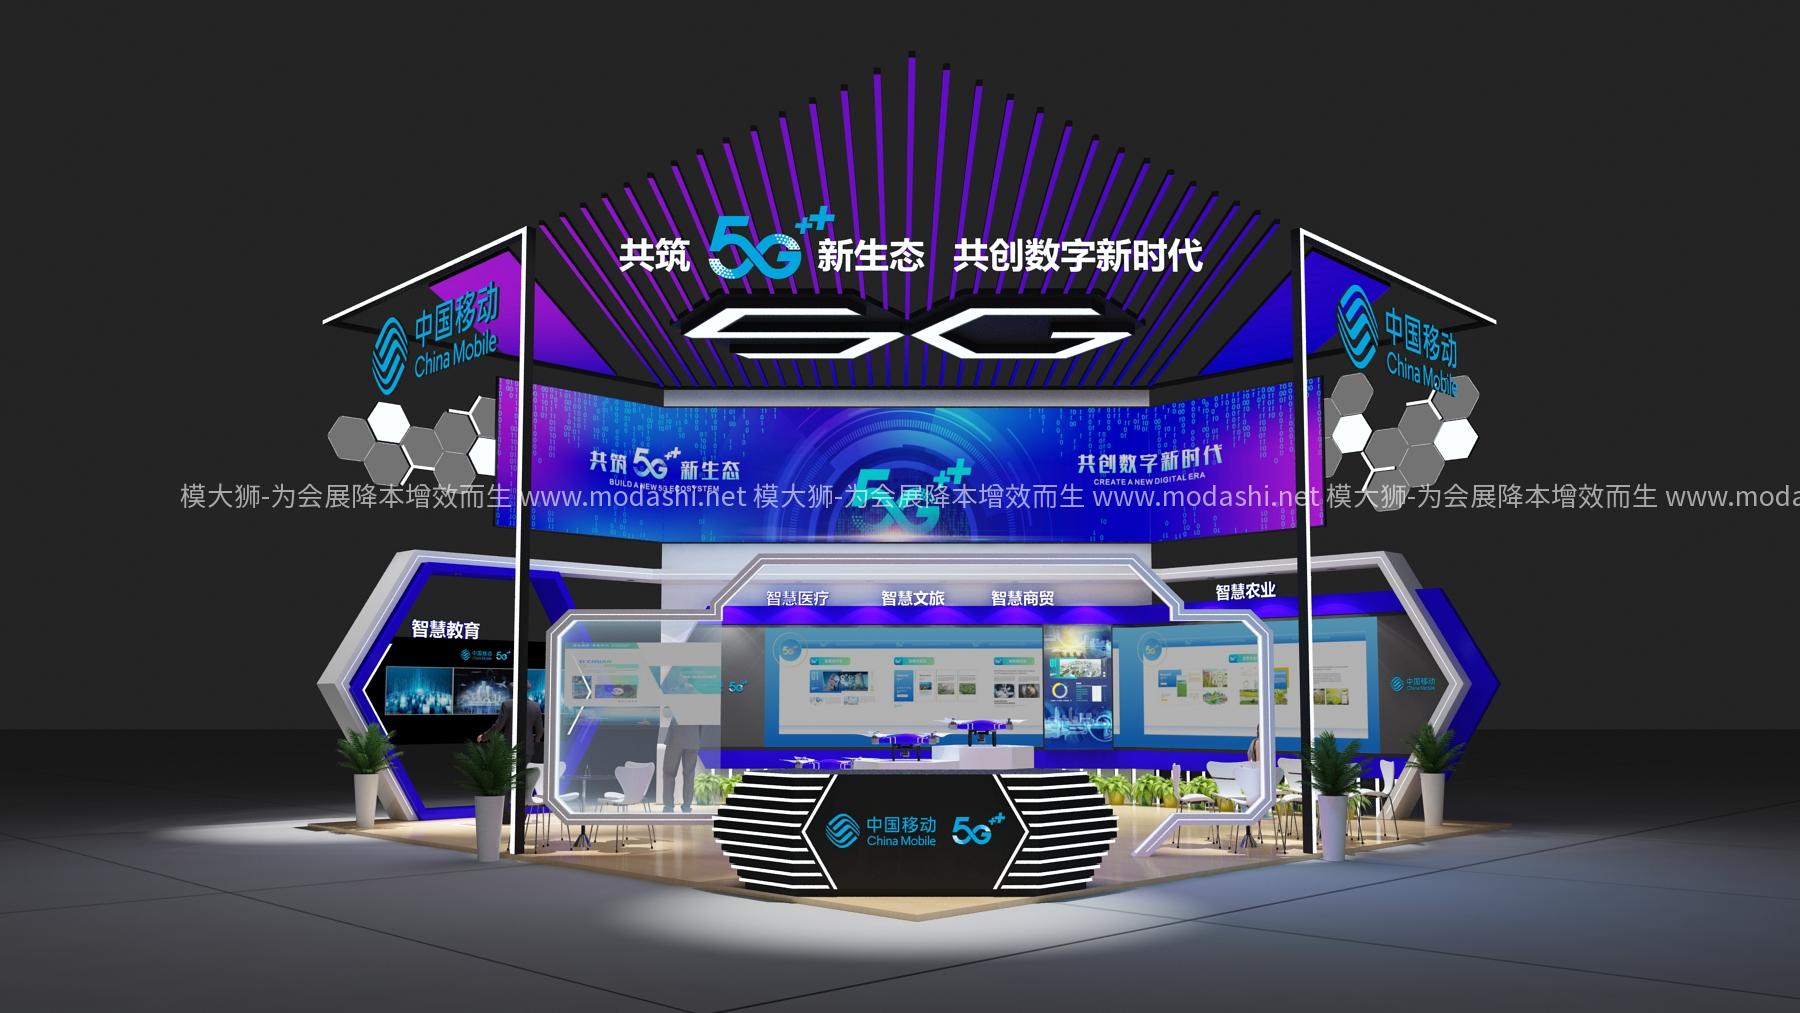 中国移动展示展台3D模型